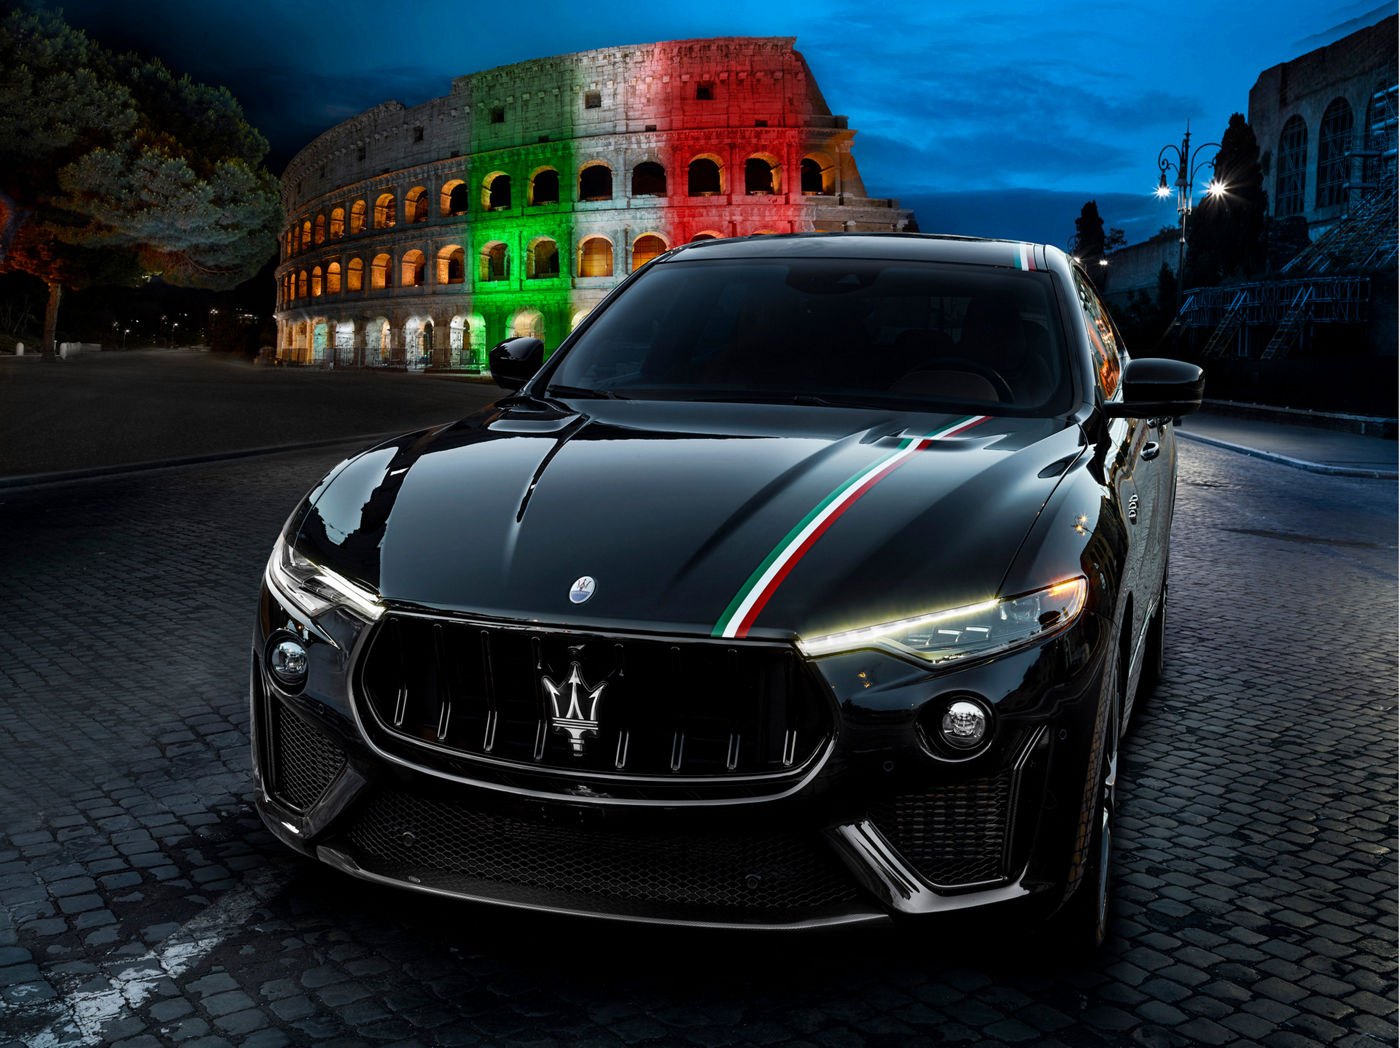 Maserati Levante Trofeo avec livrée spéciale aux couleurs de l'Italie, en pose devant le colisée à Rome